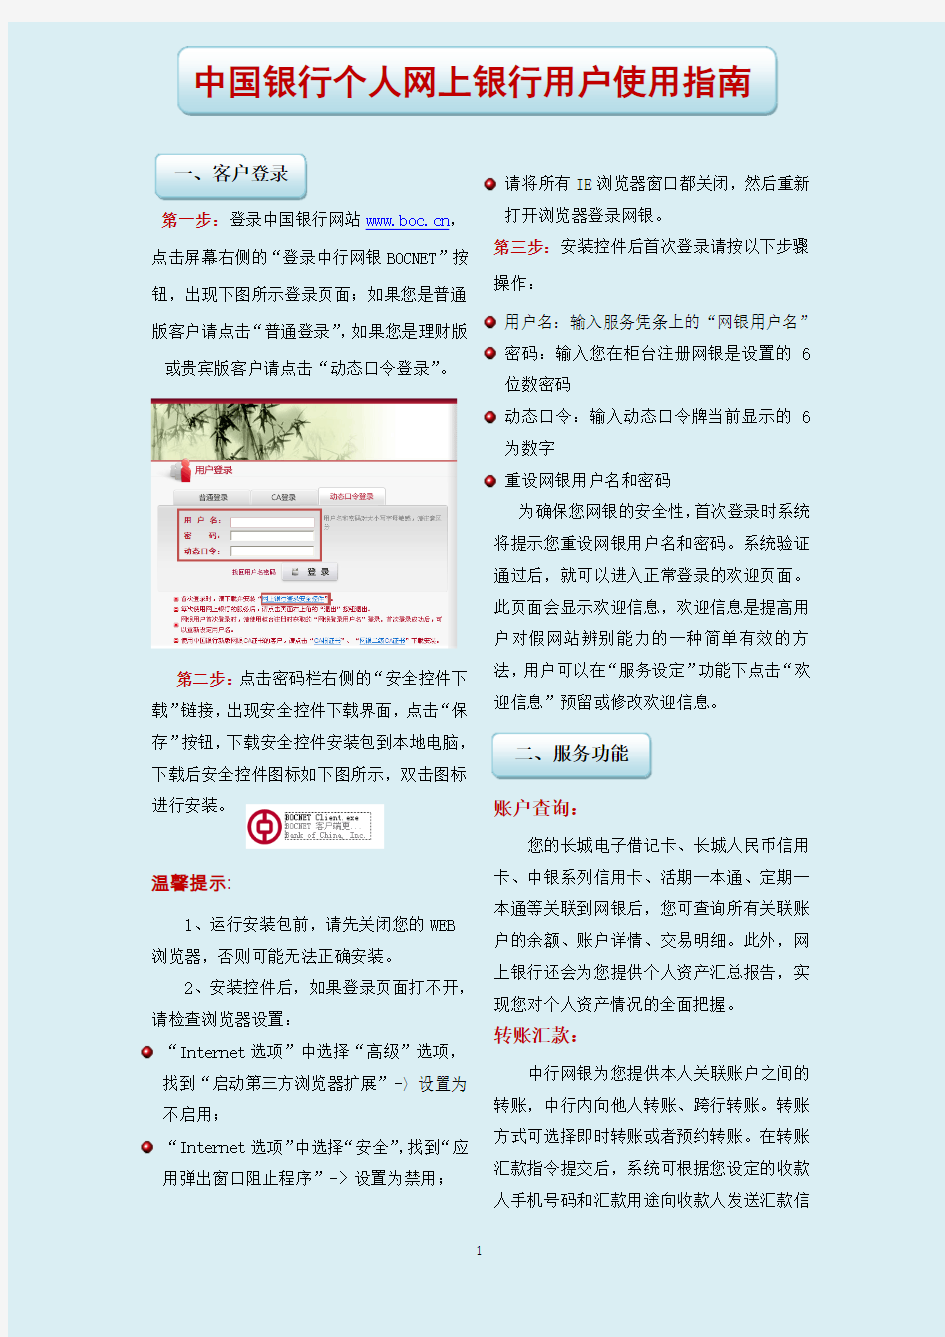 中国银行个人网上银行用户使用指南